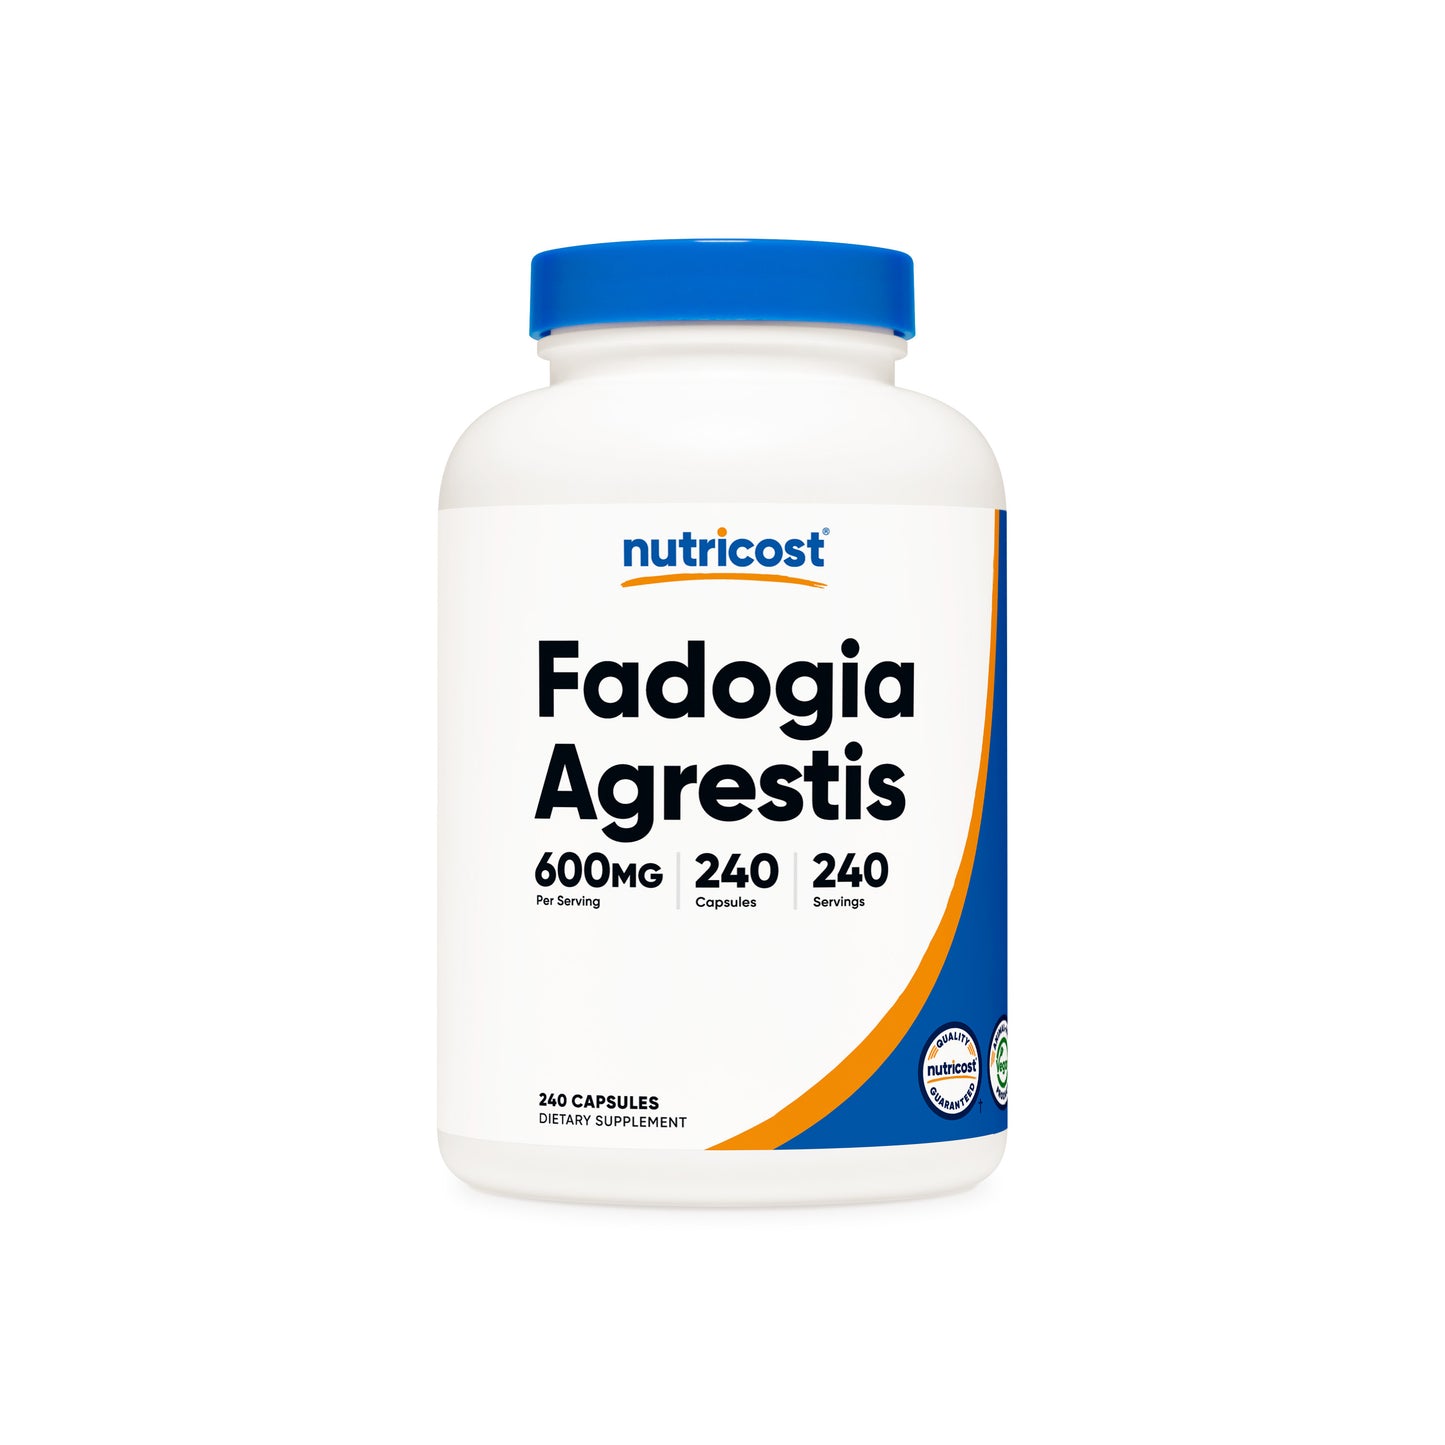 Nutricost Fadogia Agrestis Capsules